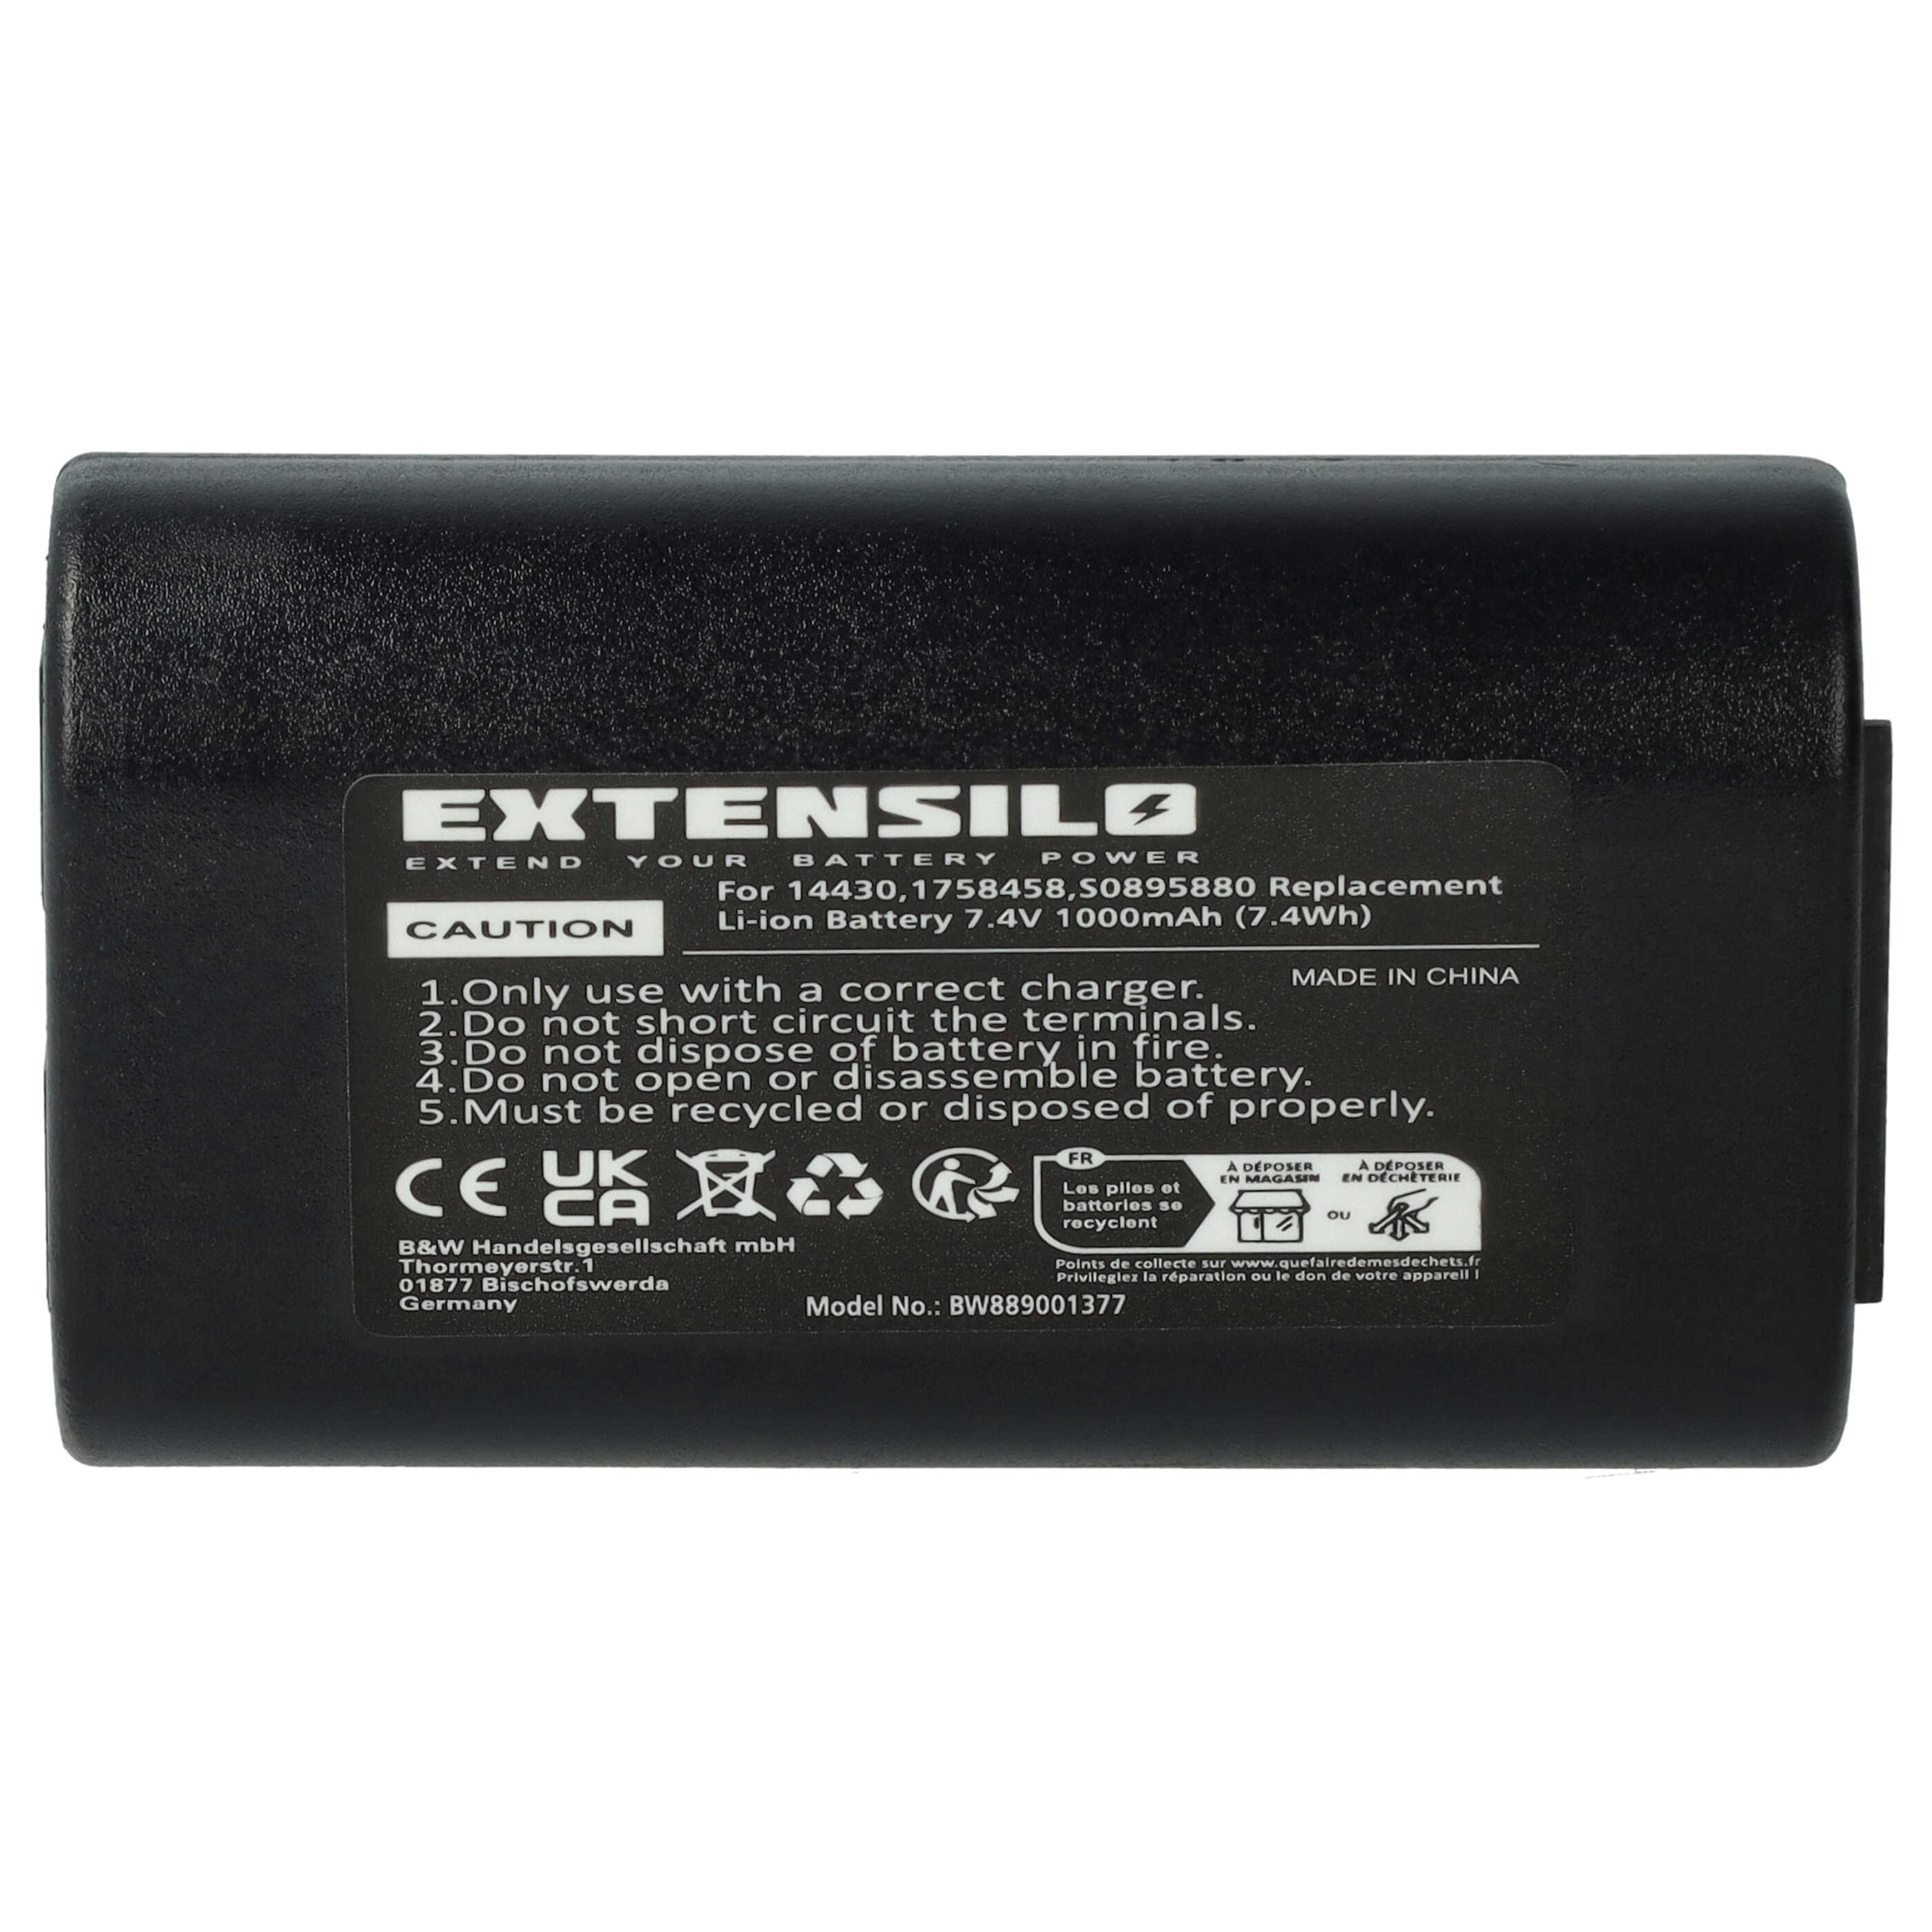 Batterie remplace 3M W003688, S0895880 pour imprimante - 1000mAh 7,4V Li-ion